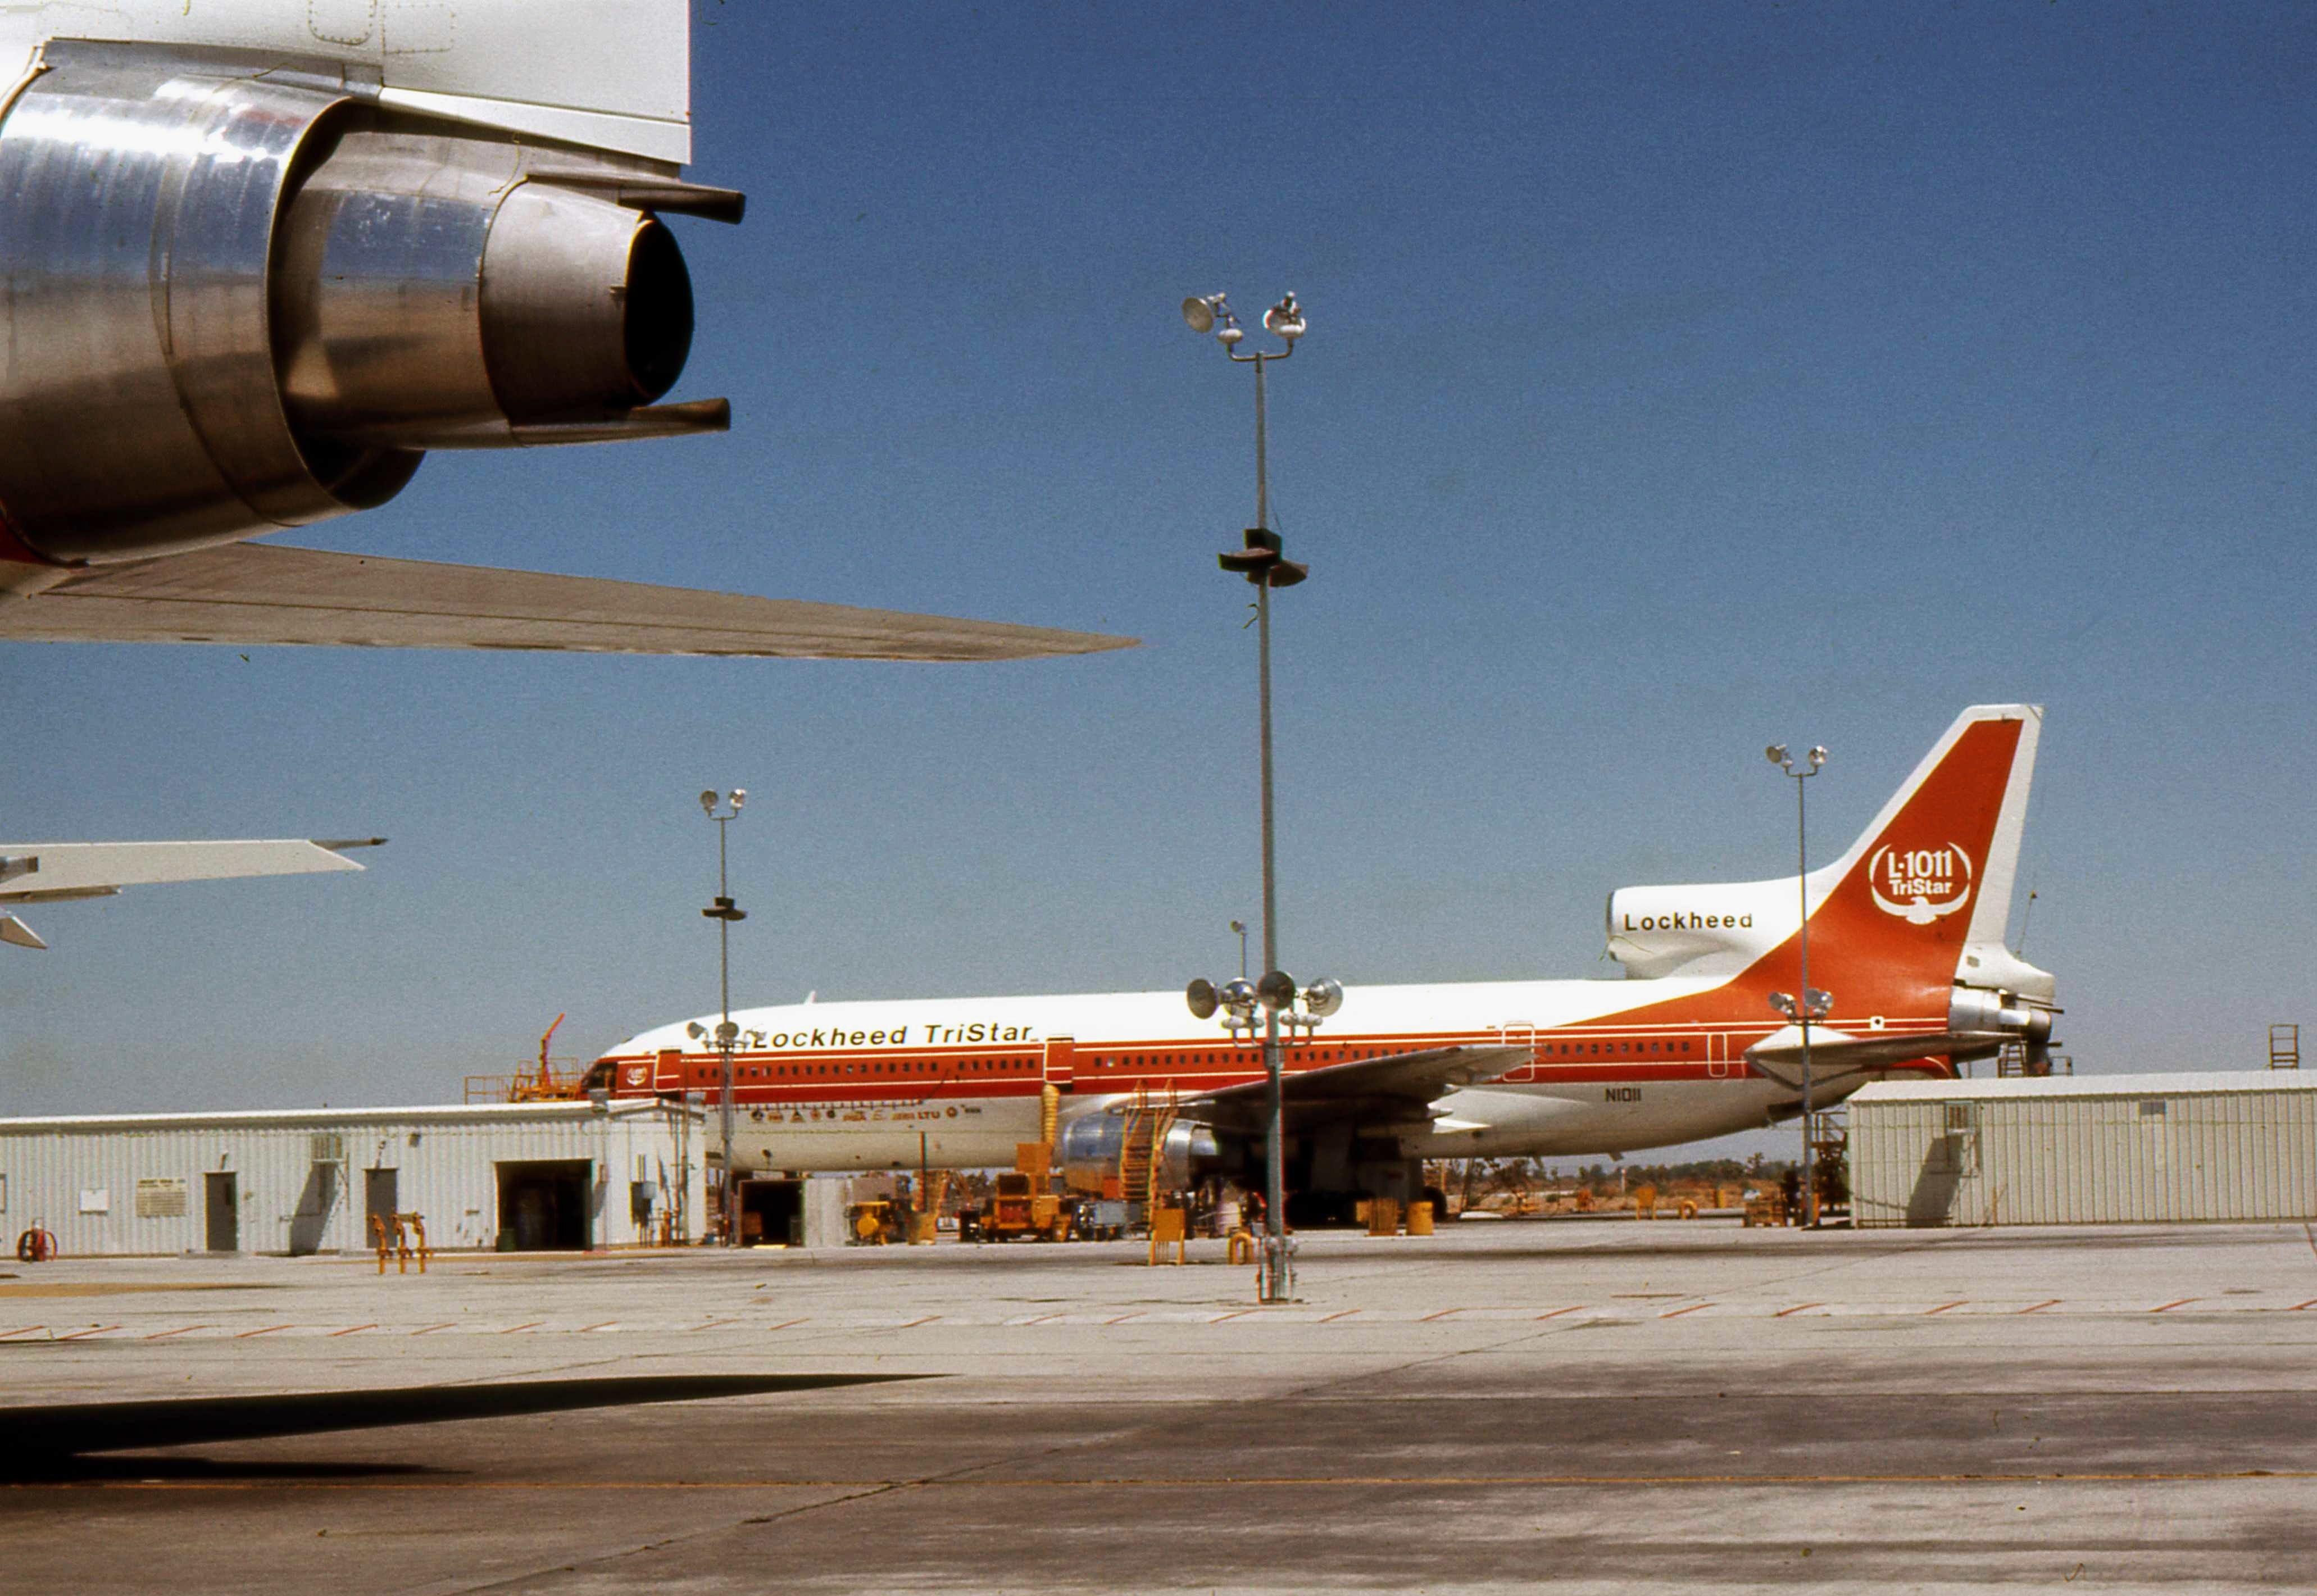 File:Lockheed TriStar L-1011 N1011.jpg - Wikimedia Commons